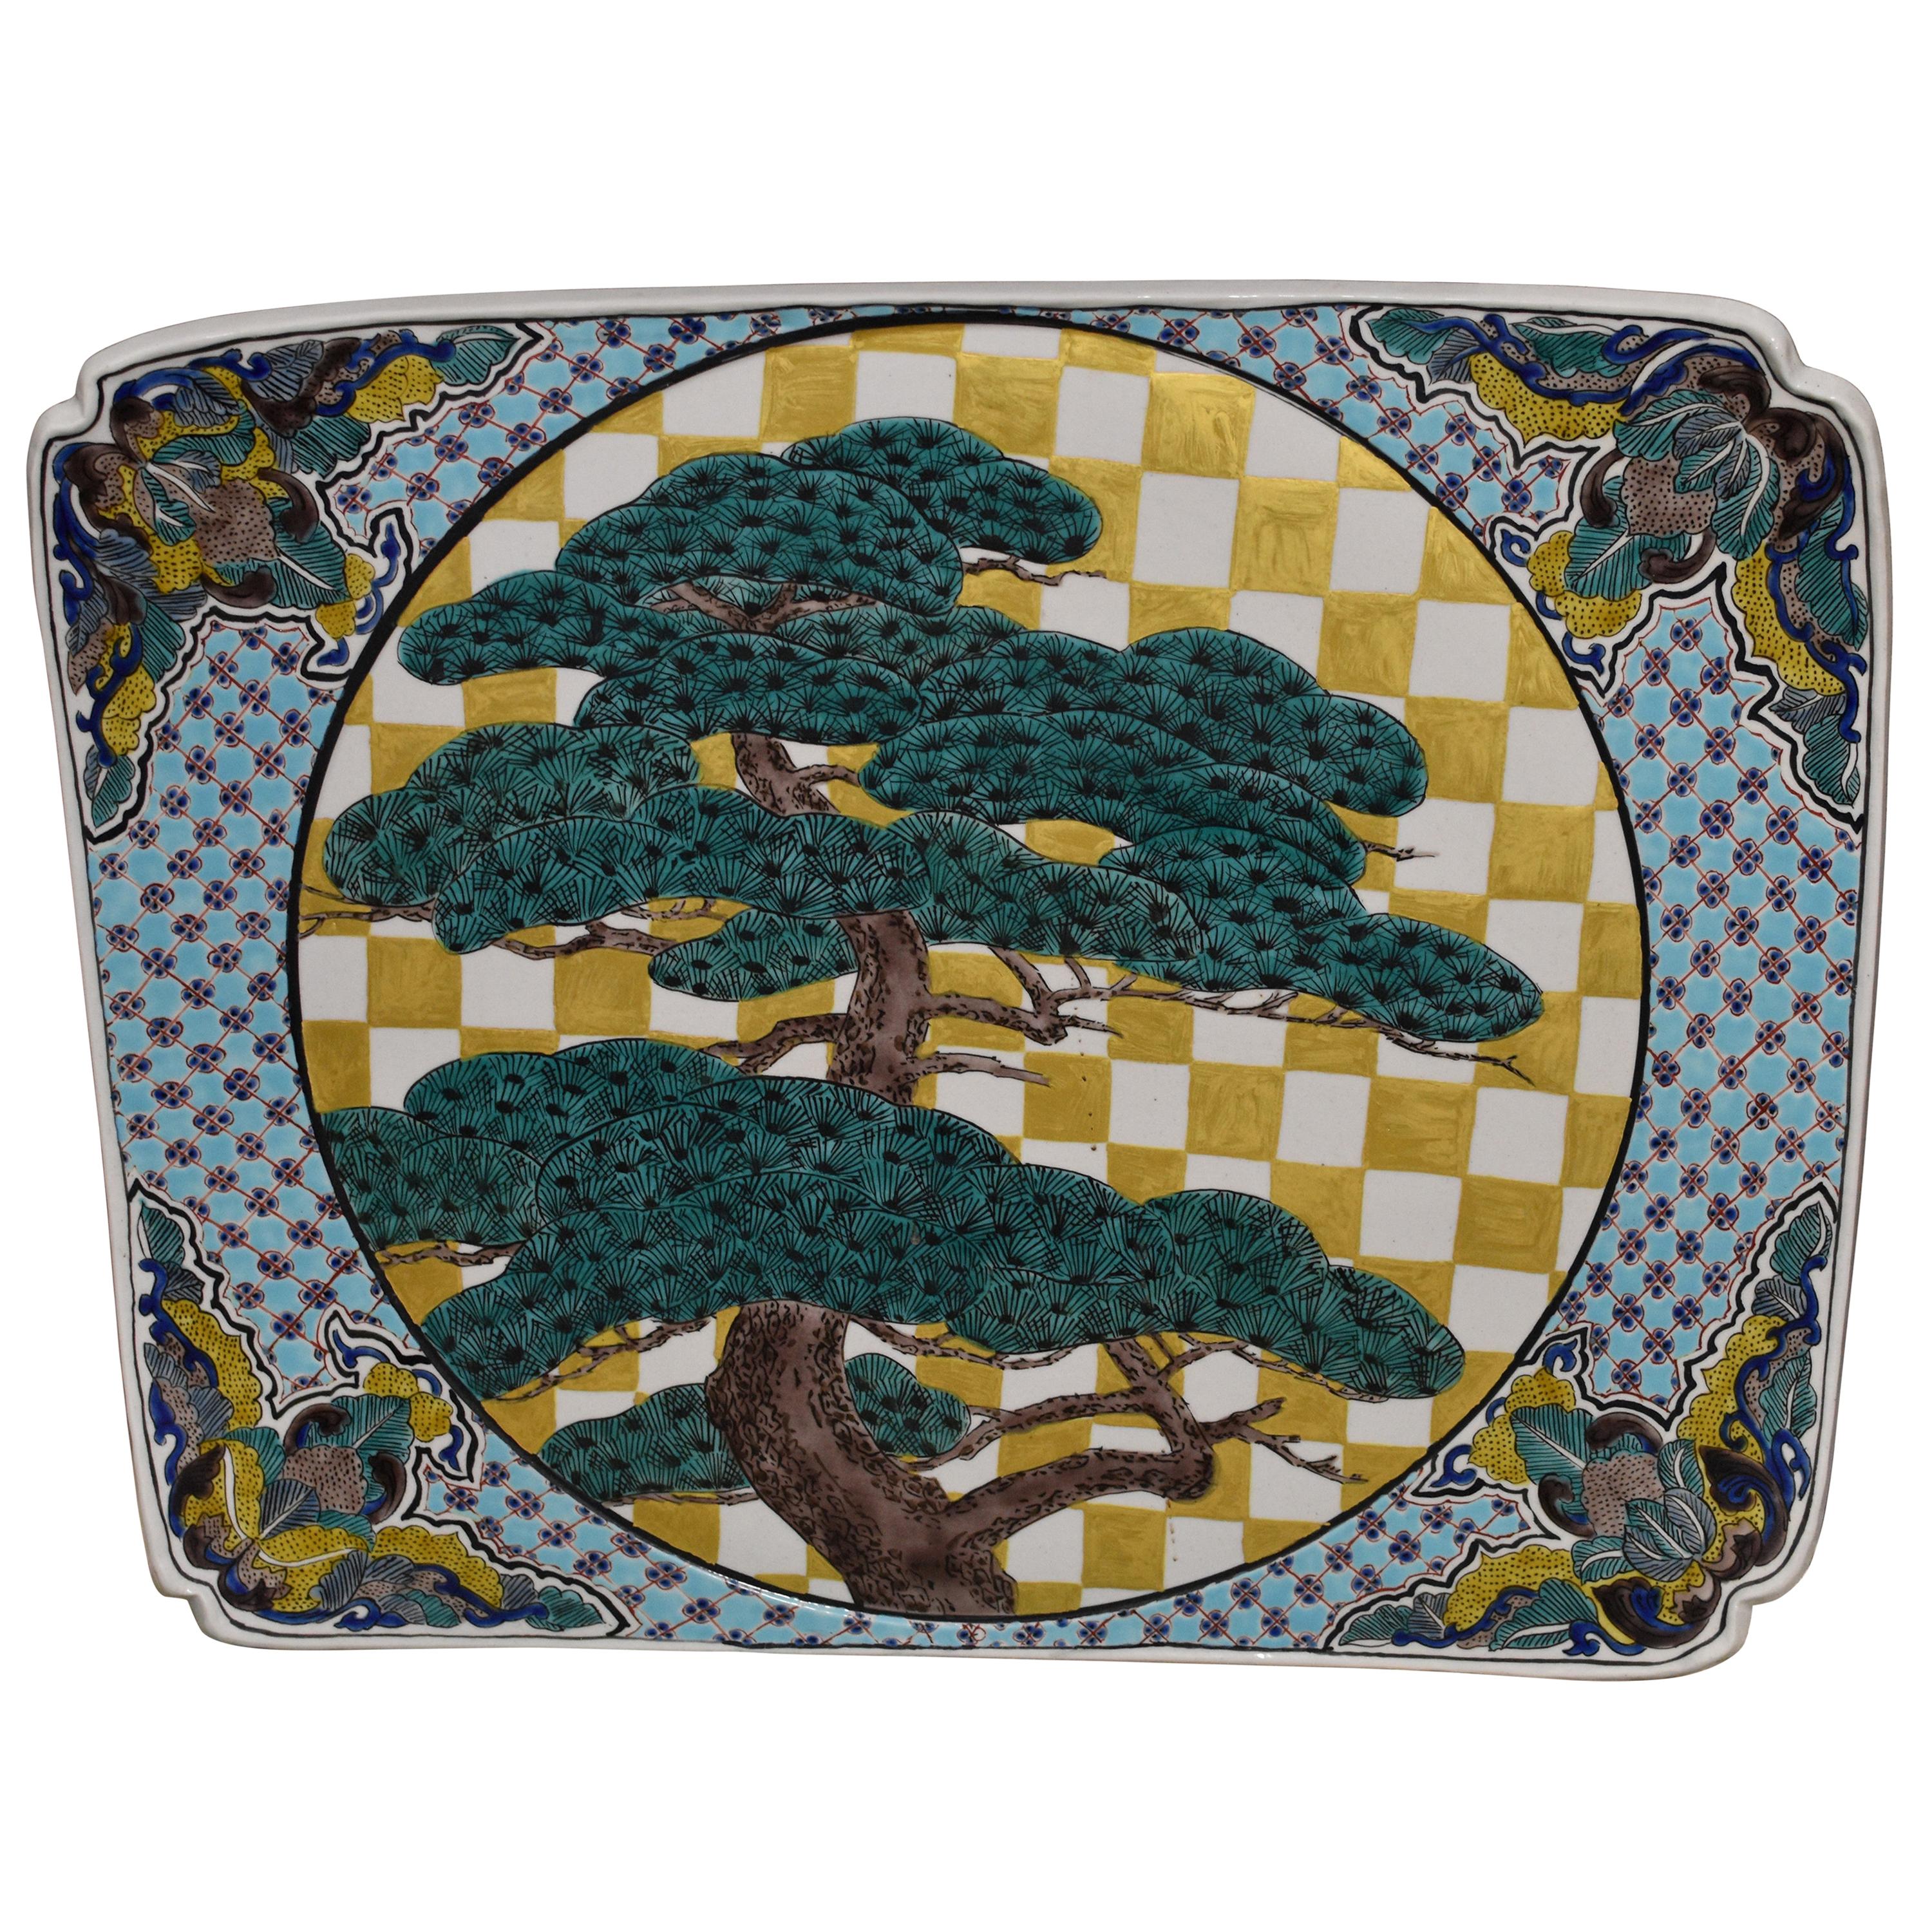 Grünes:: goldenes:: blaues:: flaches Keramikgeschirr von einem zeitgenössischen japanischen Meisterkünstler